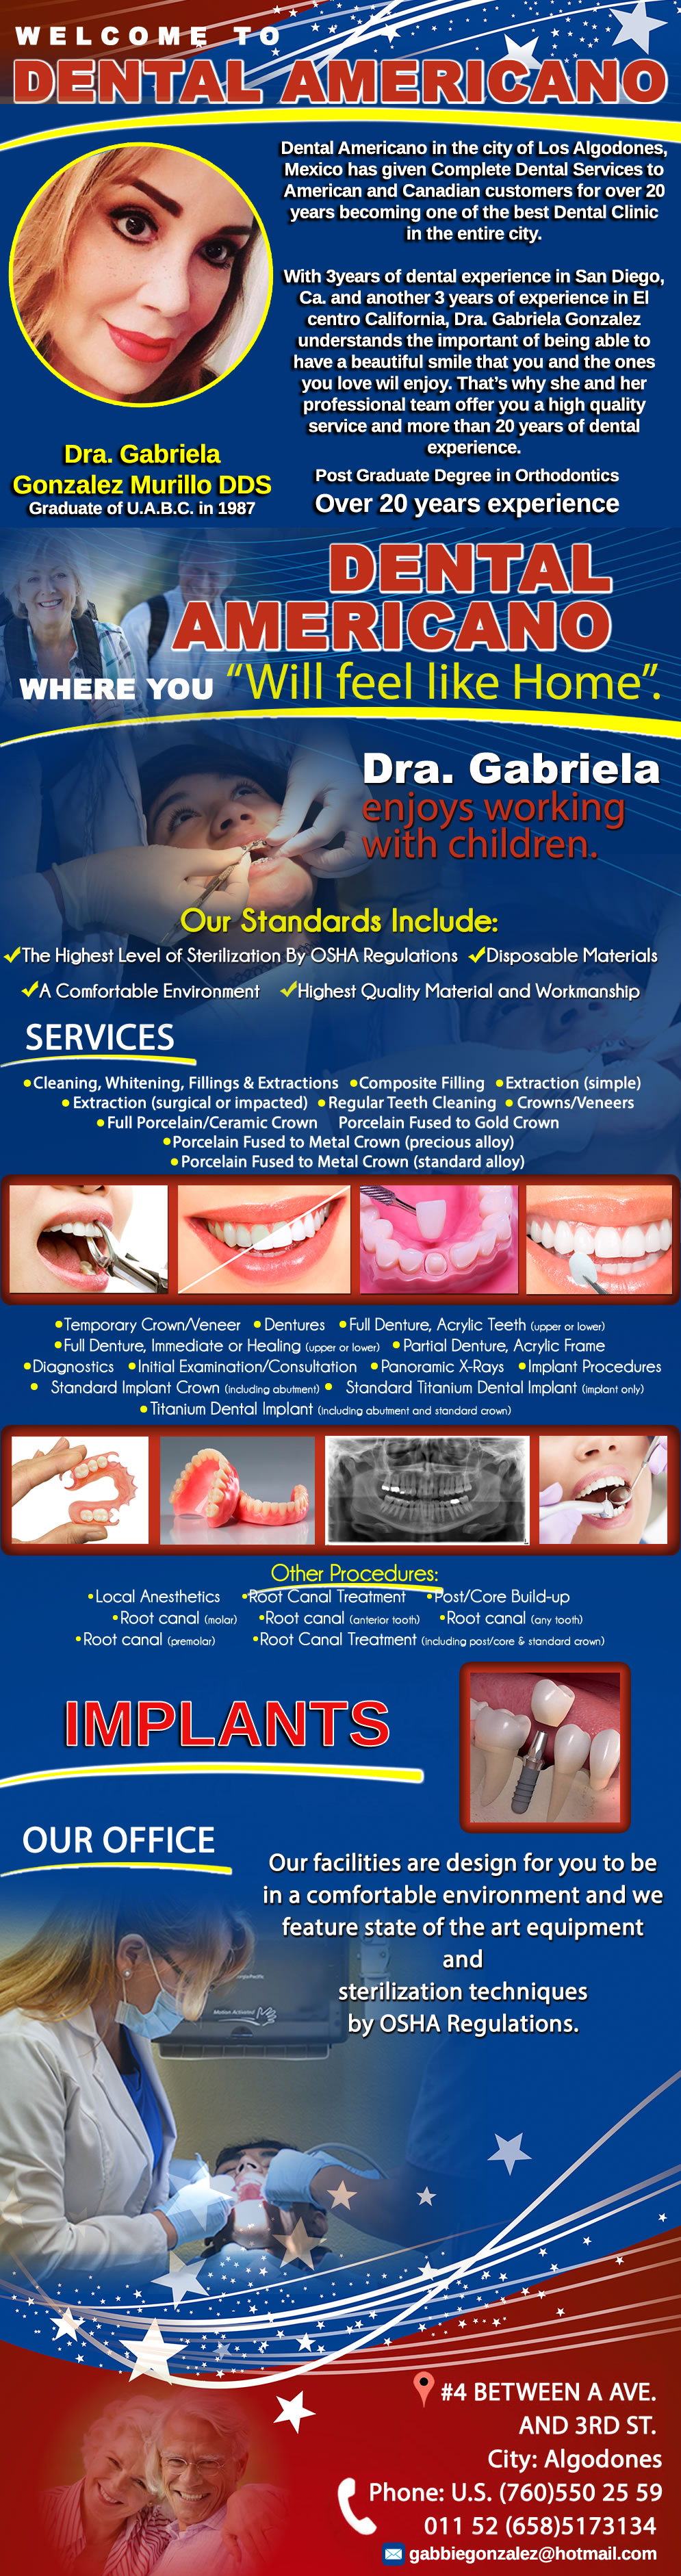 DENTAL AMERICANO DDS DRA. GABRIELA GONZALEZ M. in Algodones  in Algodones  General Dentistry and Specialists We offer complete dental services including general dentistry, cosmetic dentistry, periodontics, endodontics, orthodontics and dental implants. Bridges °X-Rays °Porcelain Veneers °Metal Crowns °Dental Bonding °Deep Cleaning °Denture Repair          General Dentistry and Specialists We offer complete dental services including general dentistry, cosmetic dentistry, periodontics, endodontics, orthodontics and dental implants. Bridges °X-Rays °Porcelain Veneers °Metal Crowns °Dental Bonding °Deep Cleaning °Denture Repair         